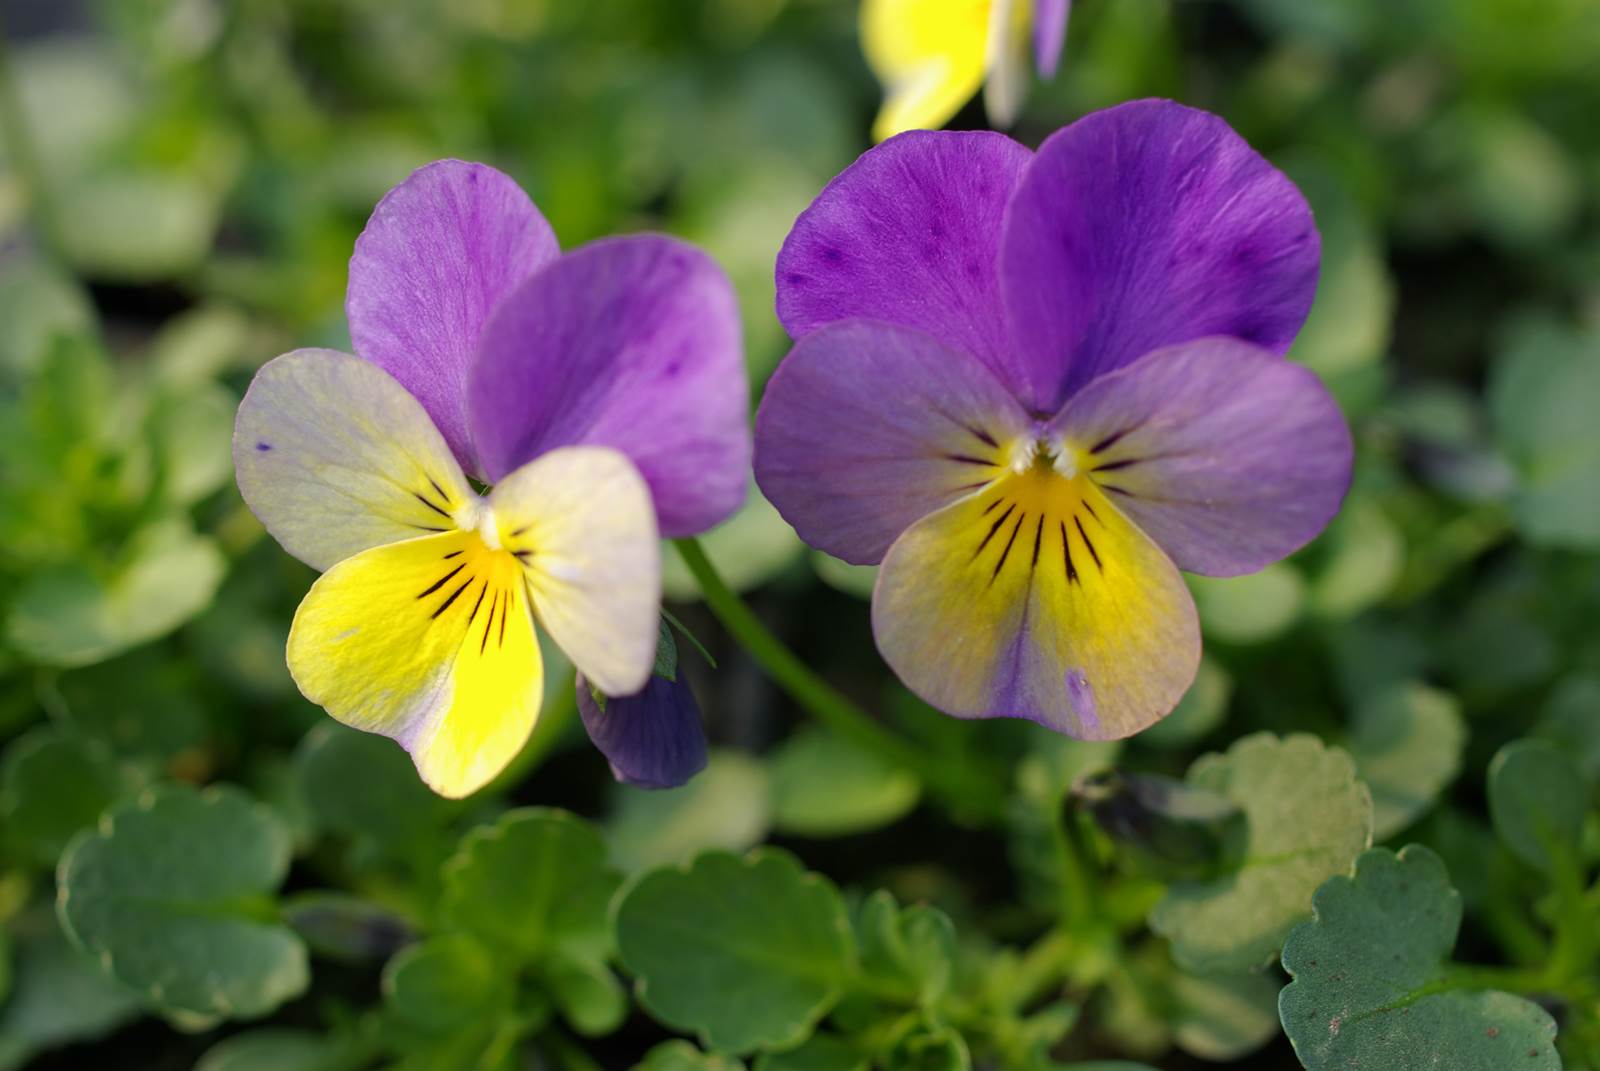 TROBOJNA LJUBIČICA (Viola tricolor L.)